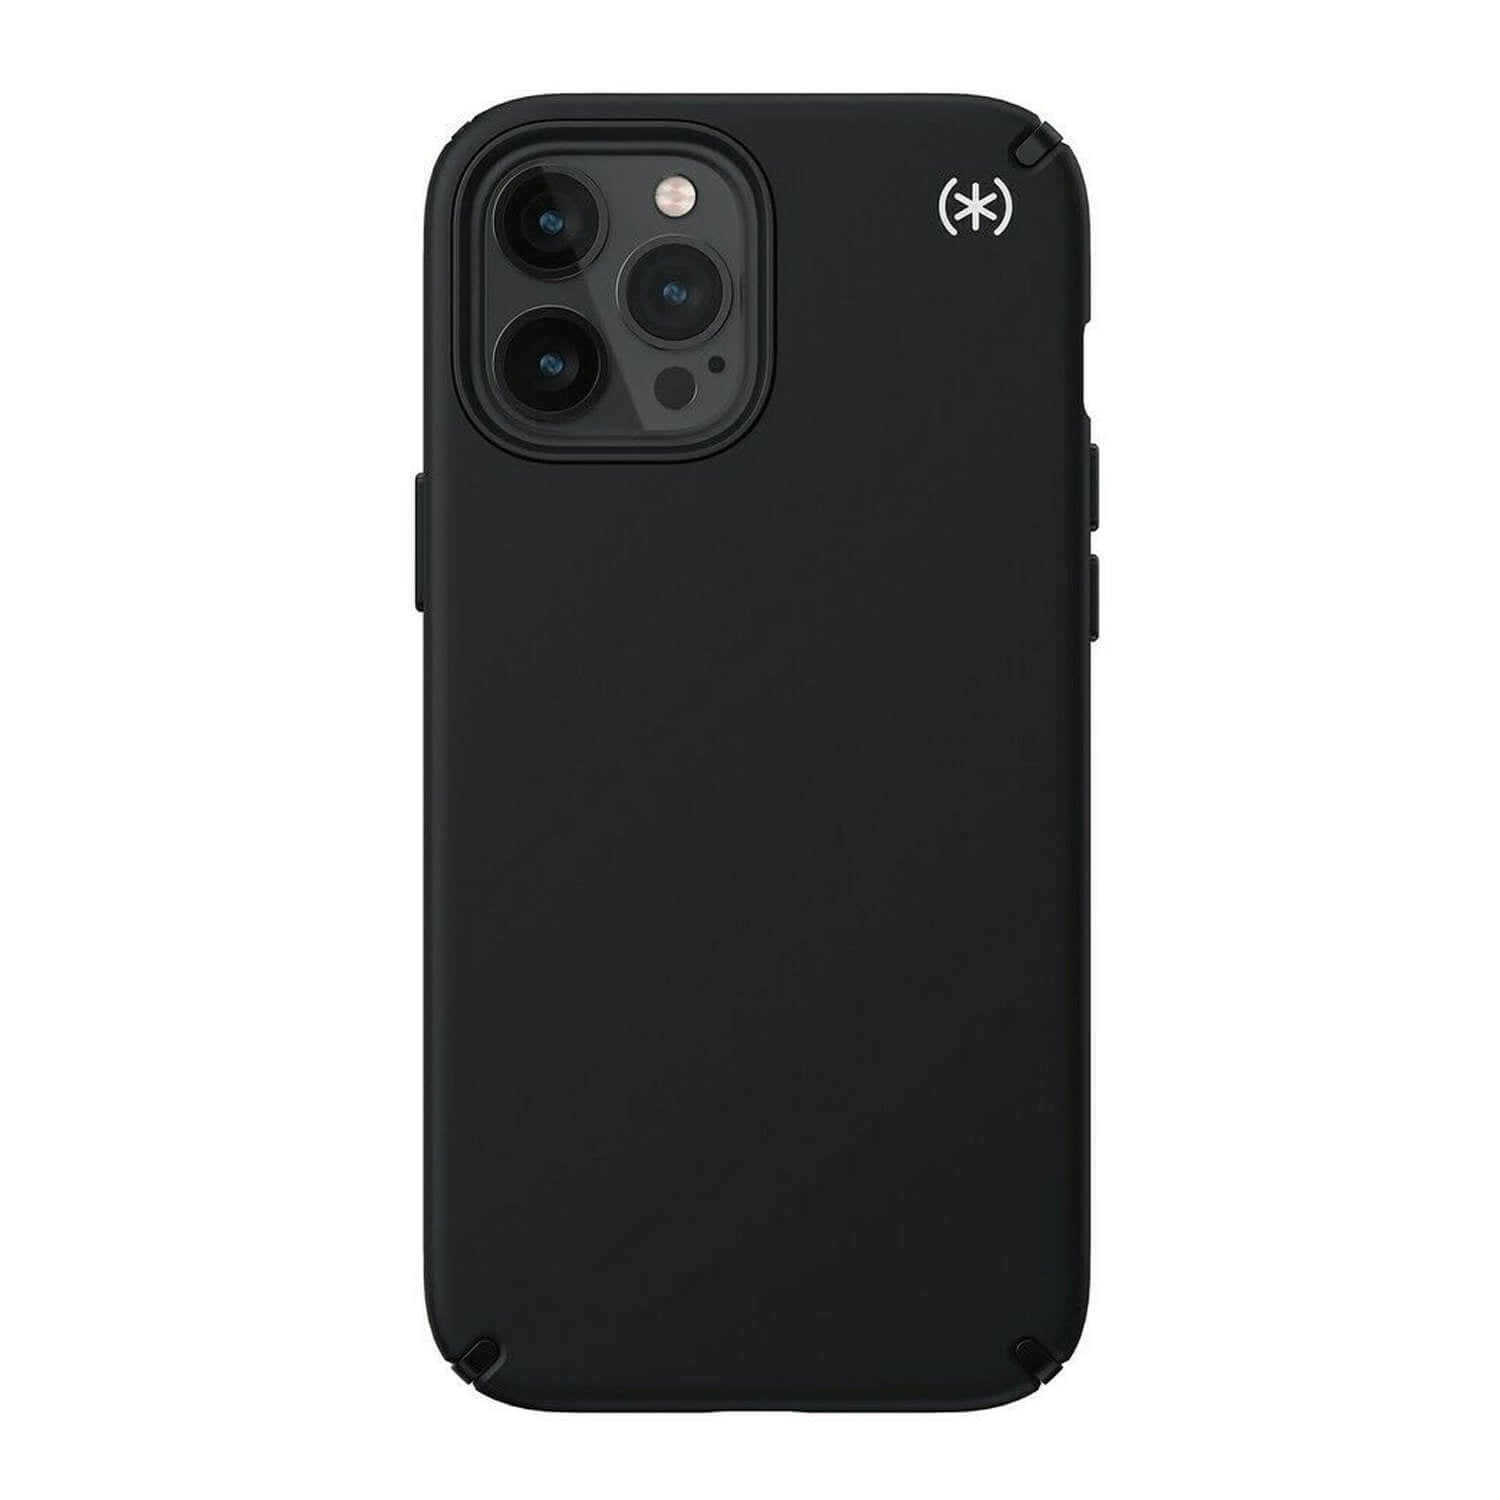 Speck iPhone 12 Pro Max Case Presidio2 Pro Black